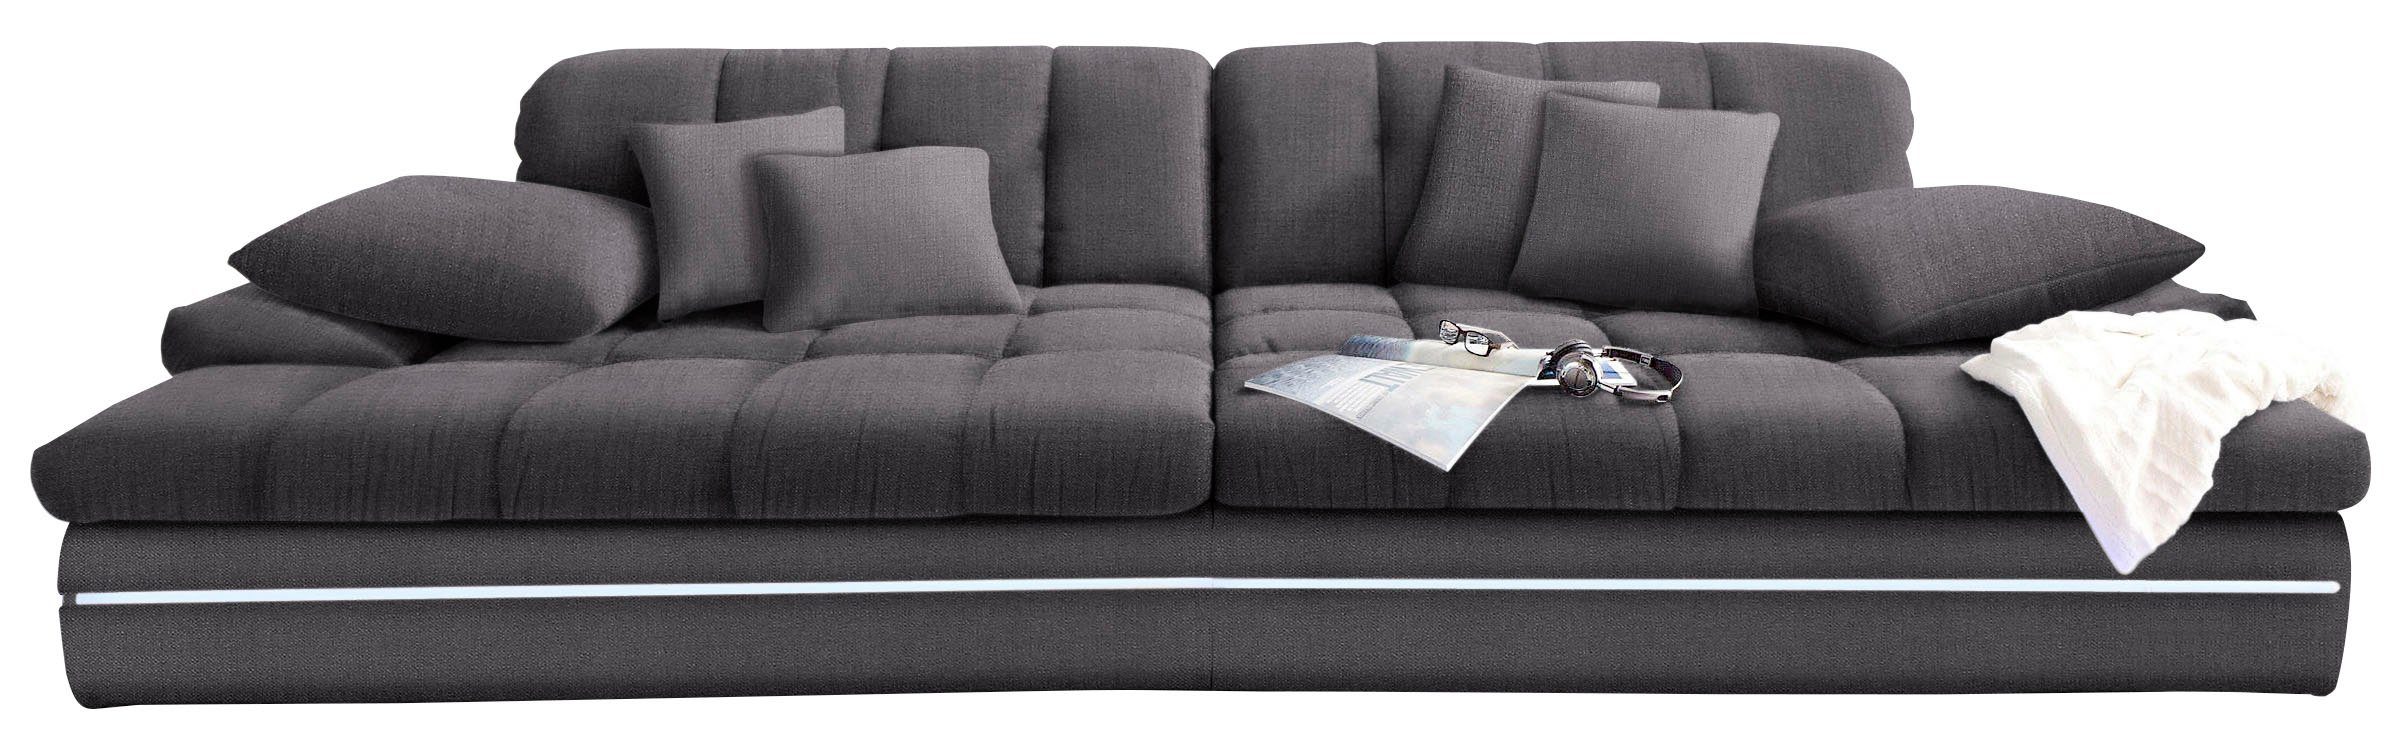 Mr. Couch Megabank Biarritz 2 naar keuze met koudschuim (140 kg belasting/zitting) en verstelbare hoofdsteun